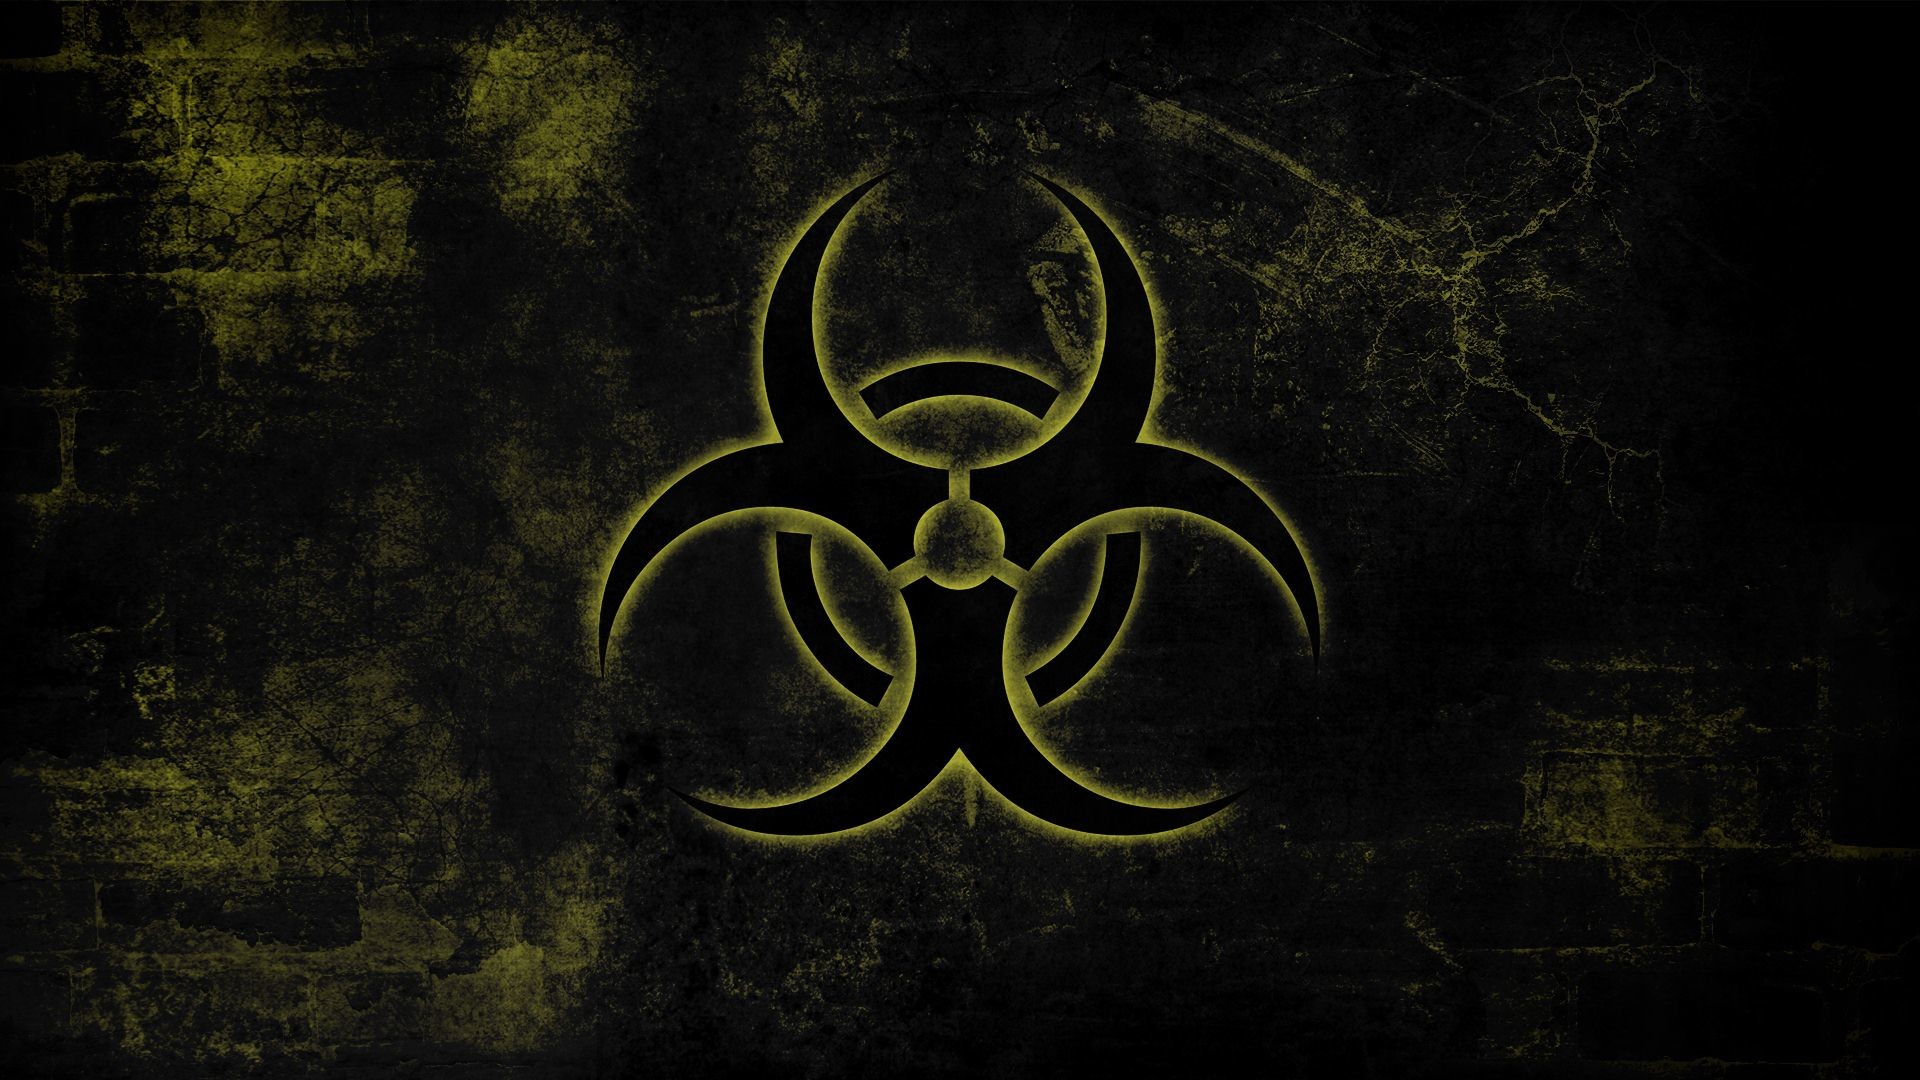 1920x1080 ... Vectors Biohazard Symbol Background Download Free of 3